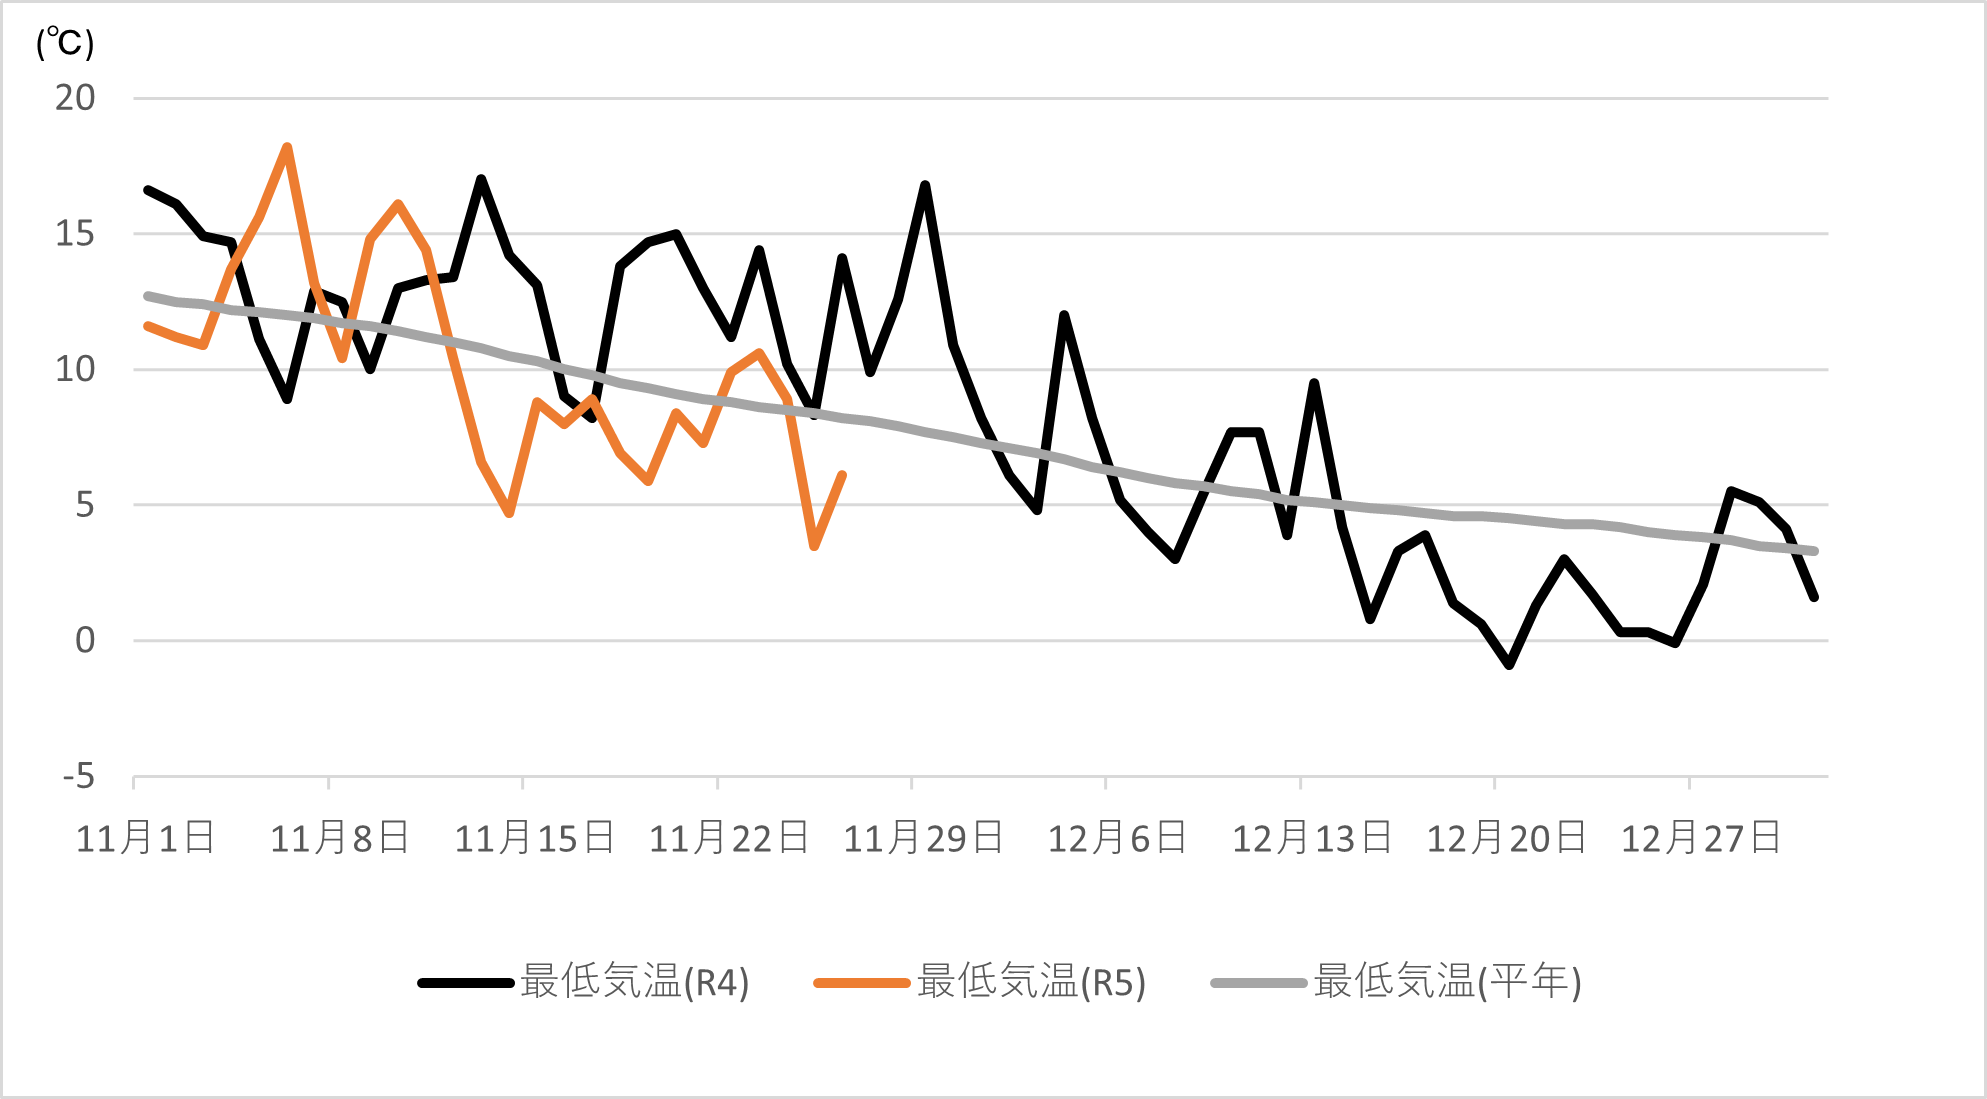 宮崎地方気象台の最低気温観測データ（平年、令和4年及び令和5年）